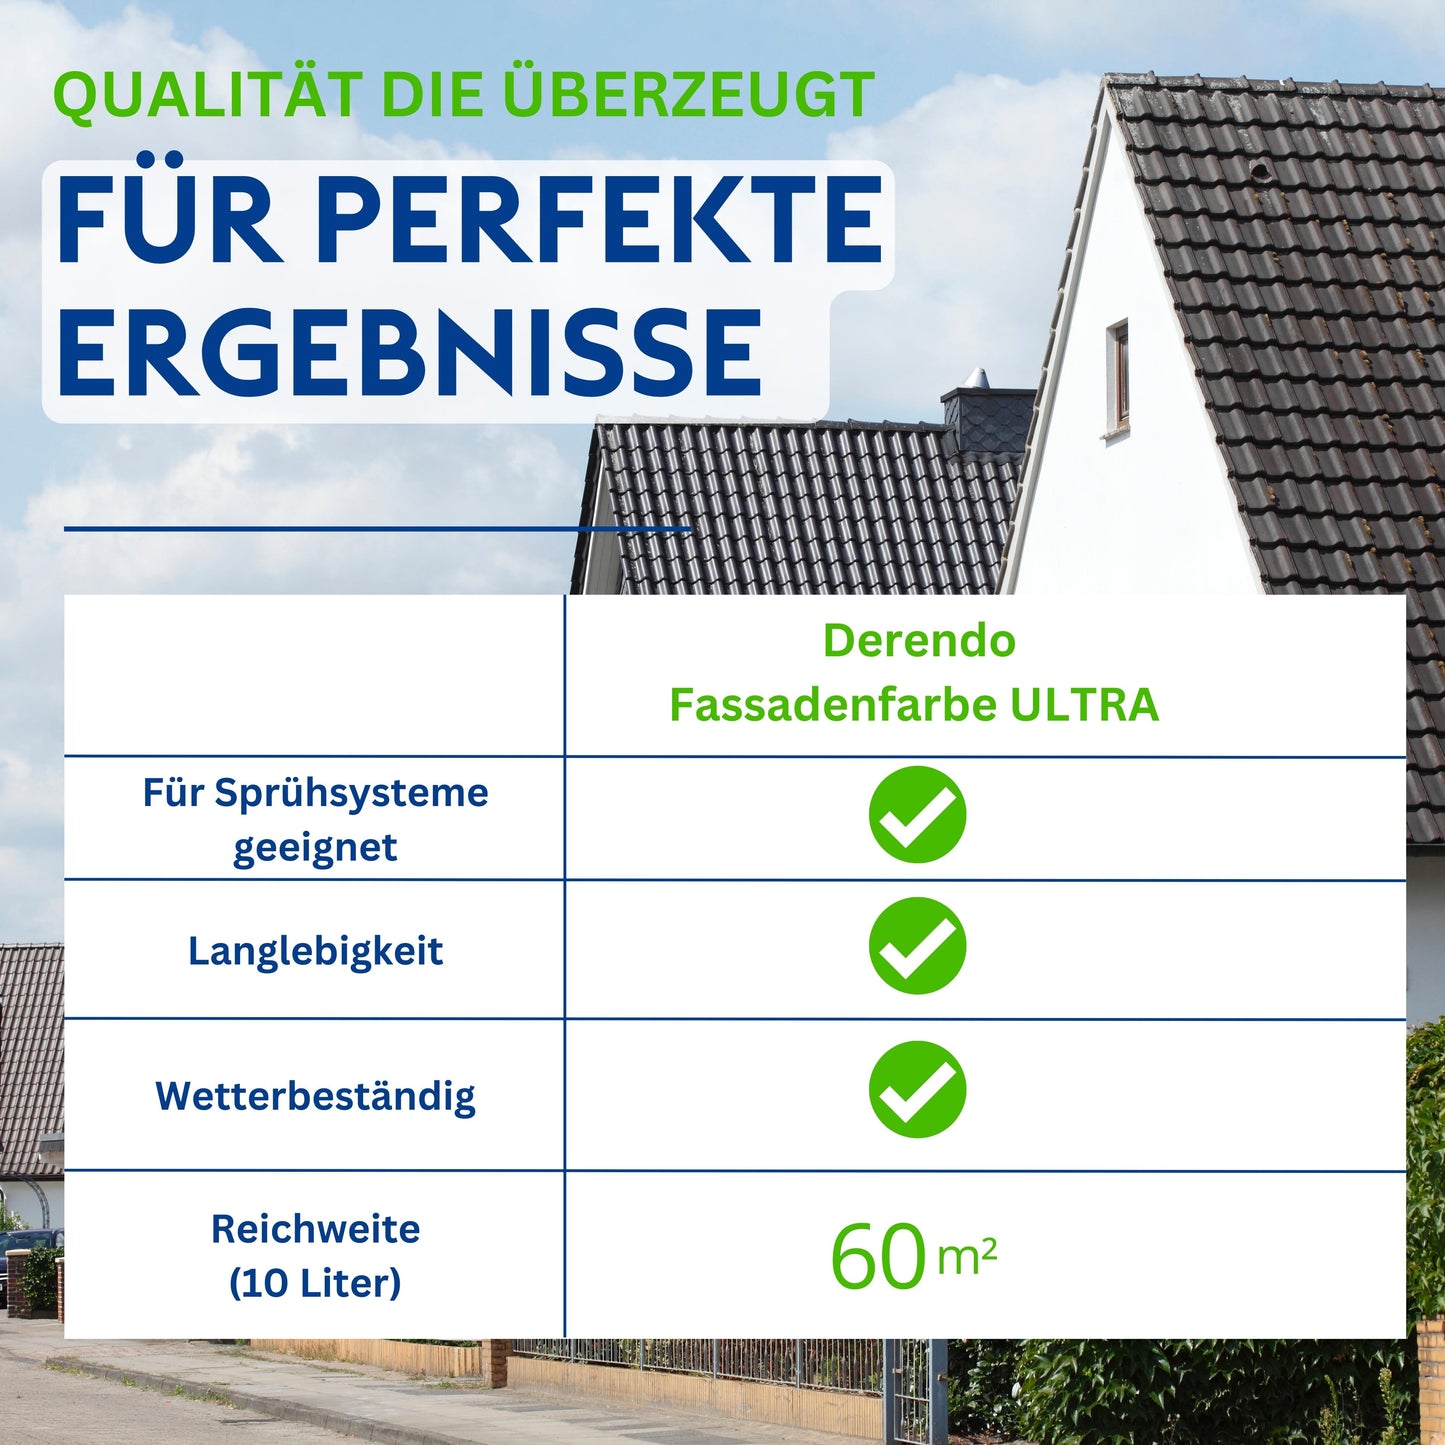 Derendo Fassadenfarbe Haselnuss mit ULTRA Wetterschutz und Abperleffekt